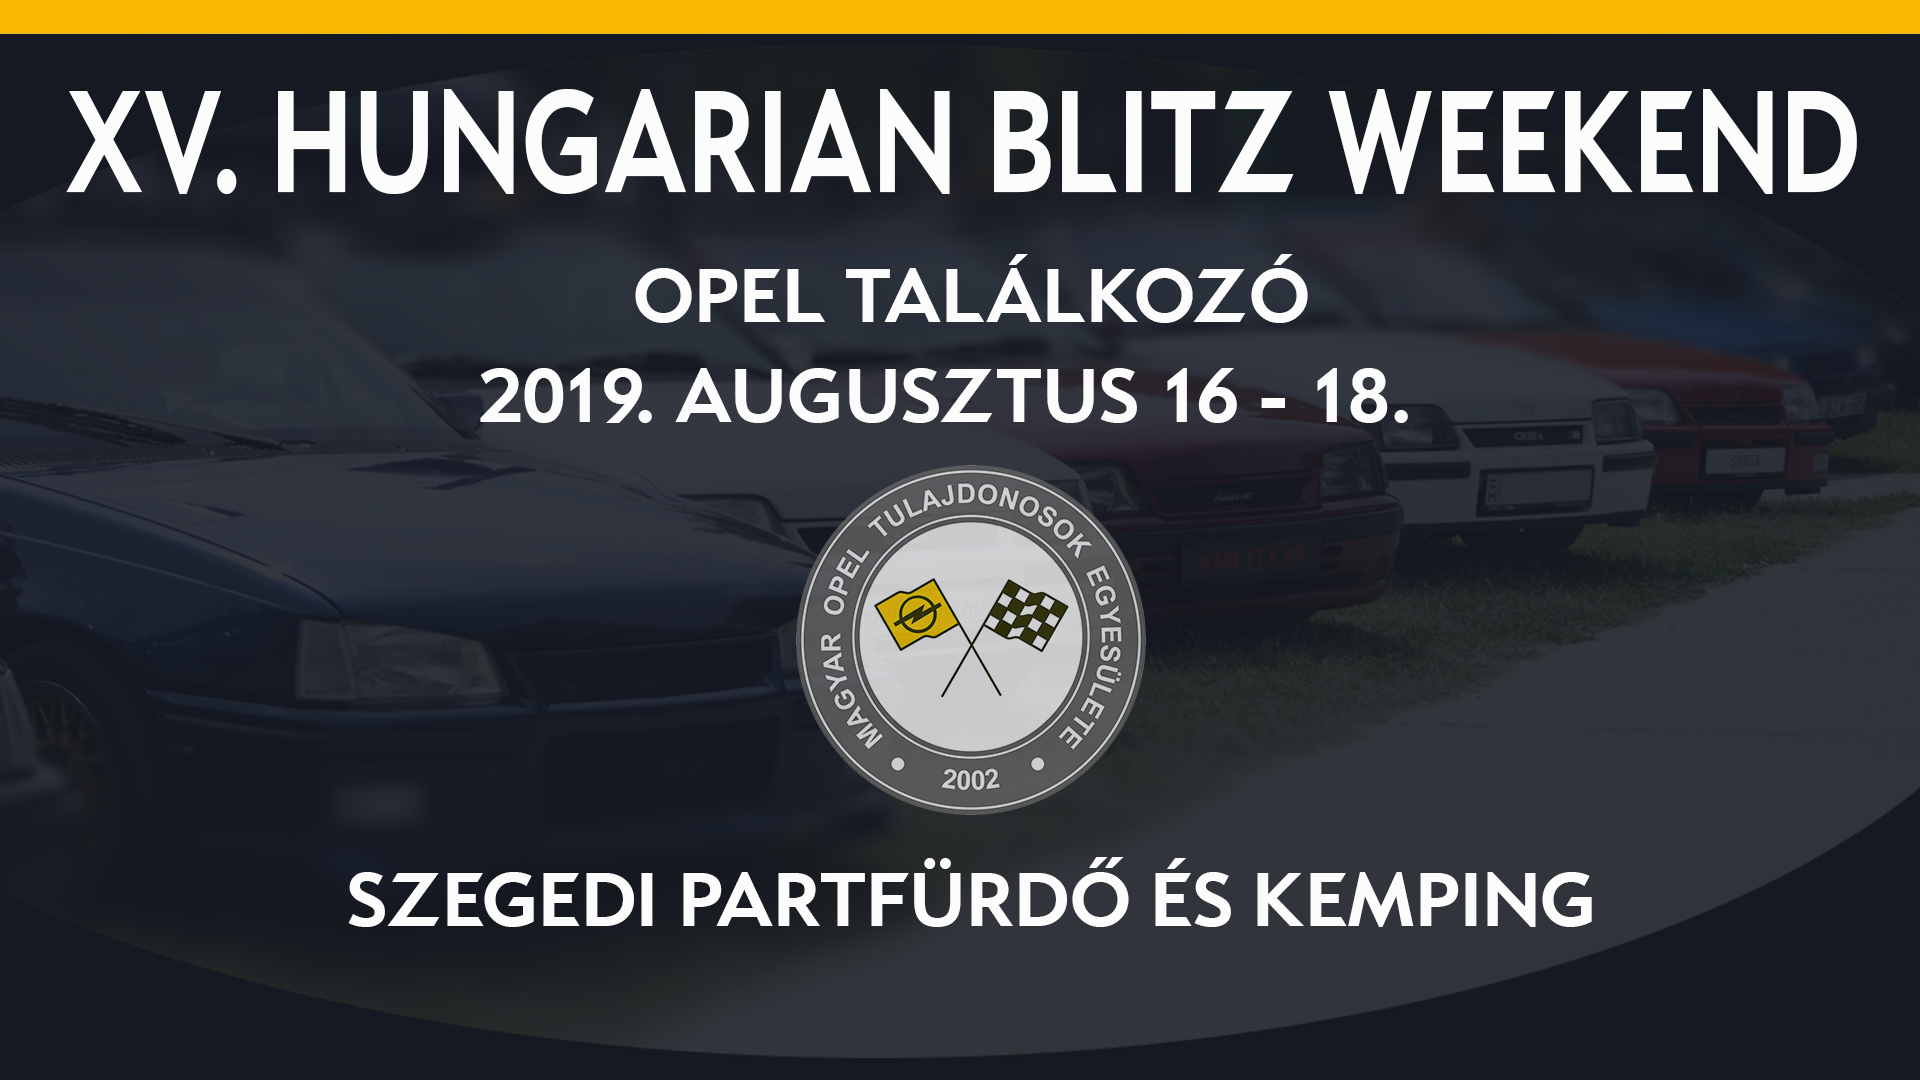 XV. Hungarian Blitz Weekend - Opel találkozó